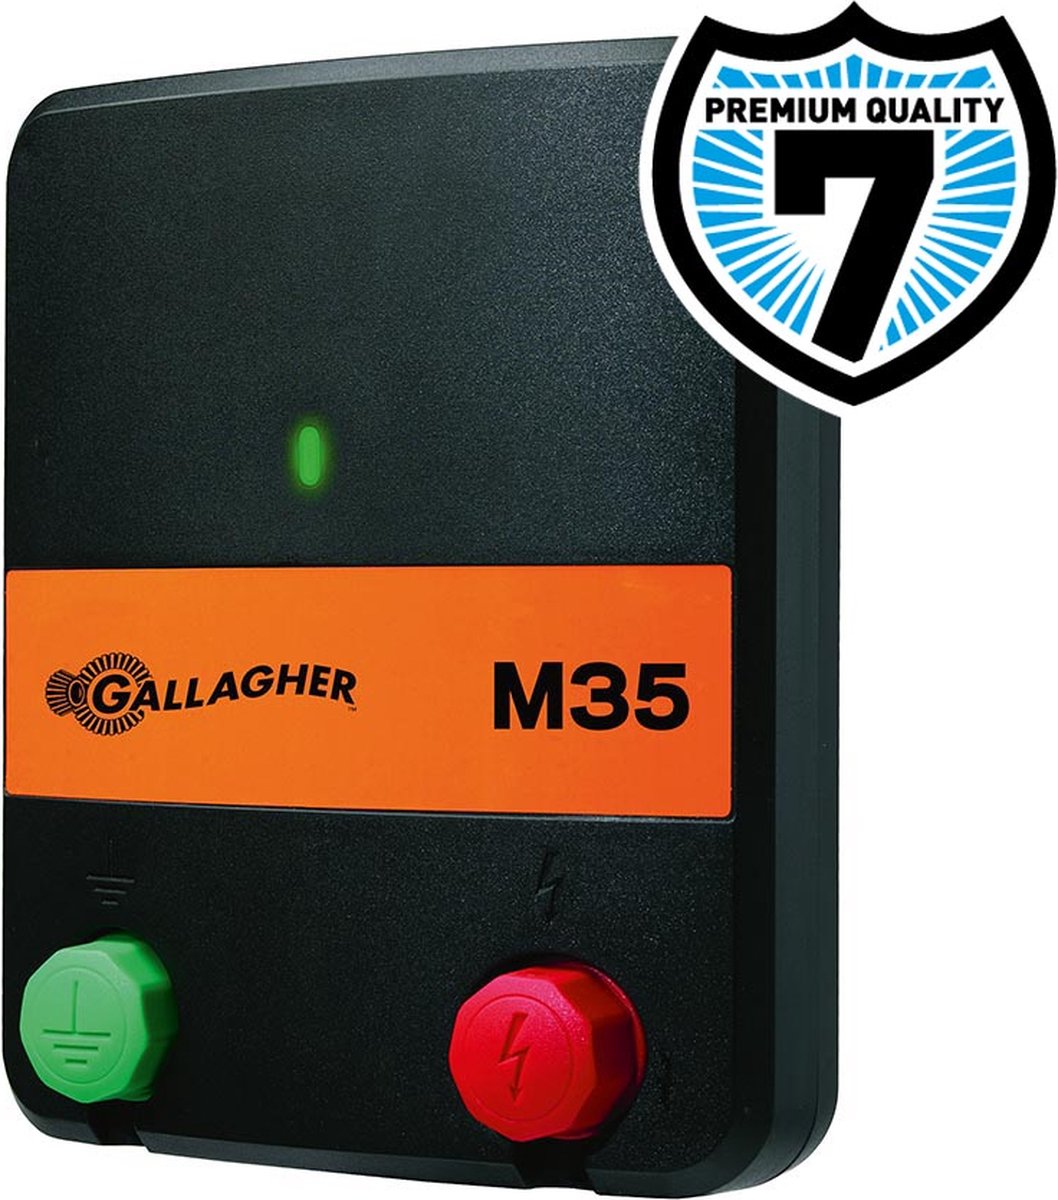 Gallagher lichtnet apparaat M35. - Gallagher